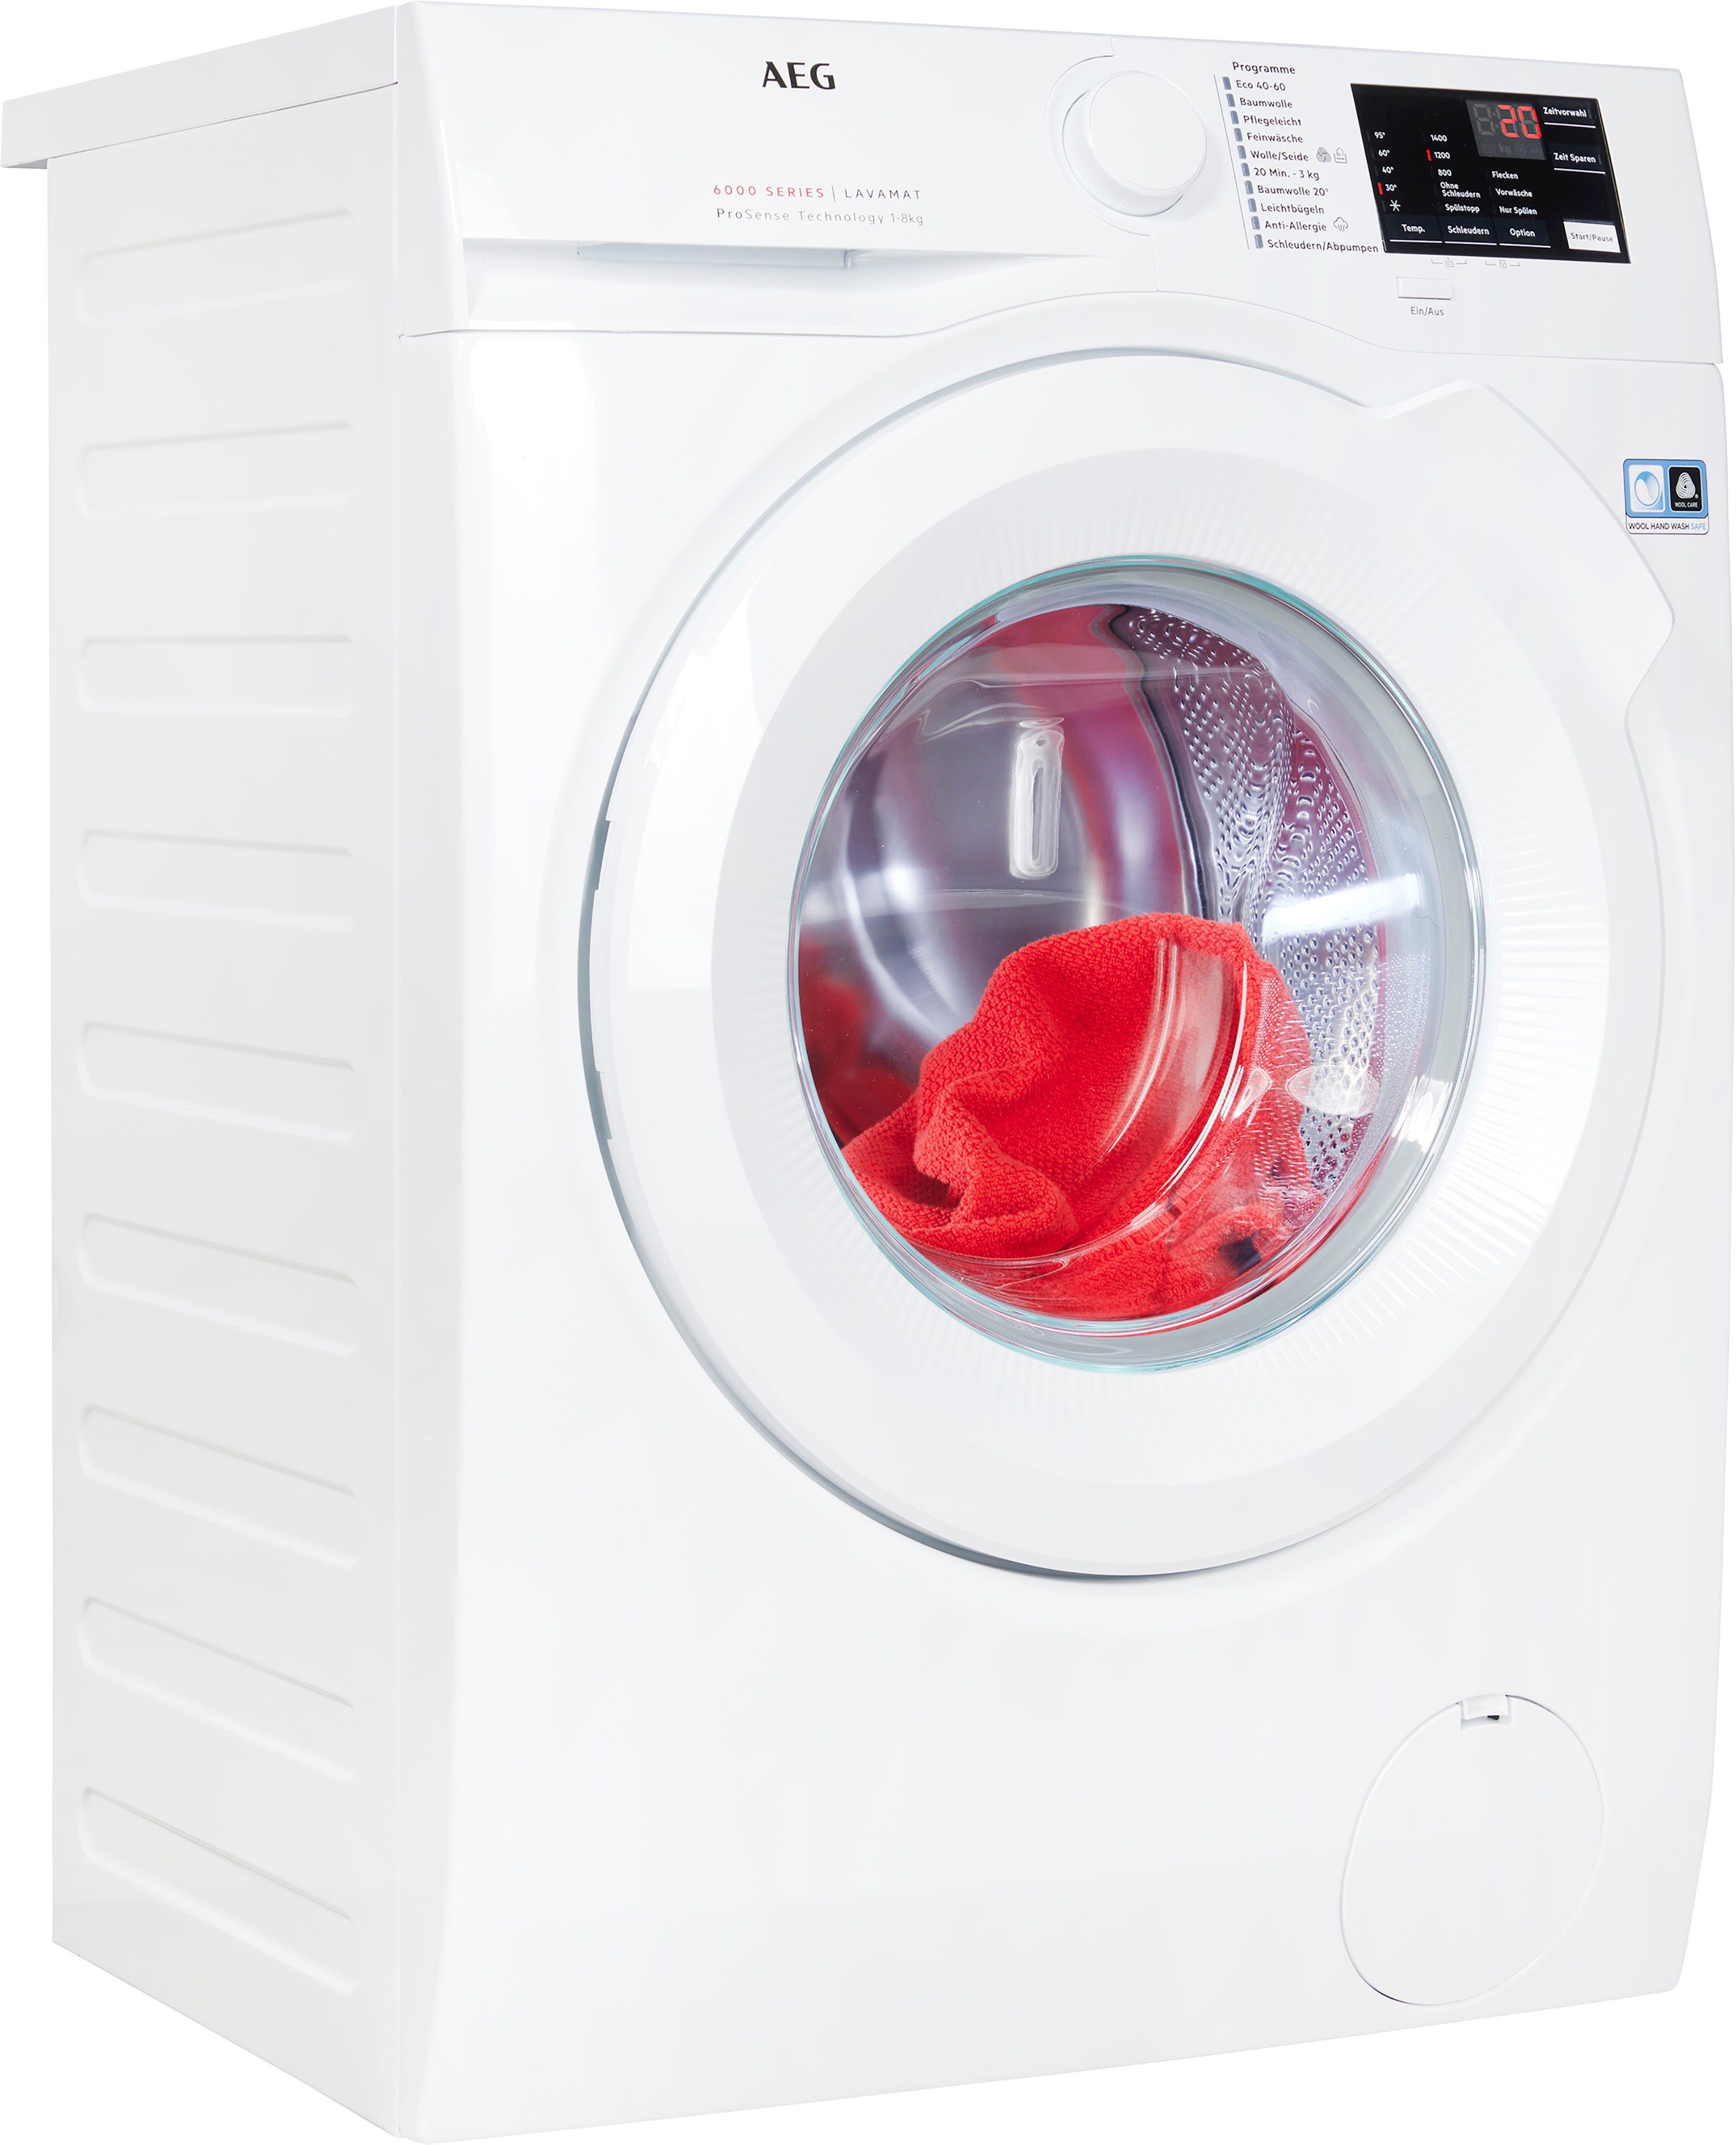 AEG Waschmaschine Serie 6000 kg, Hygiene-/ 8 Programm 1400 Dampf L6FB480FL, U/min, Anti-Allergie mit